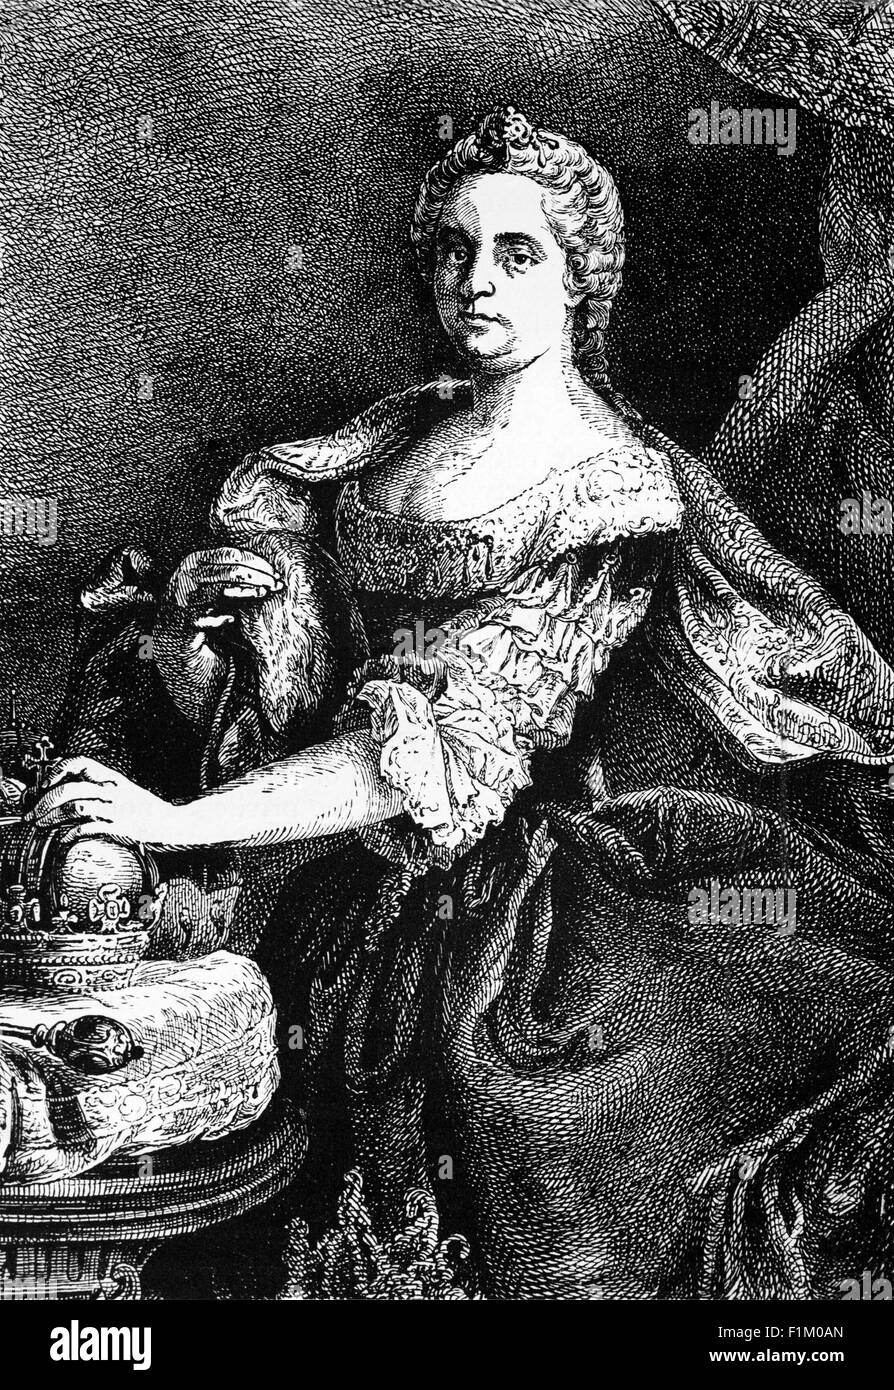 María Teresa, la reina de la emperatriz, esposa de Luis XIV de Francia. Hija del rey Felipe IV de España e Isabel de Francia, fue traigada a Luis por la Paz de los Pirineos (1659), que puso fin a una guerra de 24 años entre Francia y España. En virtud de los términos del pacto, aceptó renunciar a su reivindicación de sucesión al trono español a cambio de una gran dote. A la muerte de Felipe IV, Luis XIV afirmó que la dote de Marie-Thérèse nunca había sido pagada, su renuncia era nula y conquistó parte de los países Bajos españoles en nombre de su esposa (Guerra de devolución, 1667–68). Foto de stock